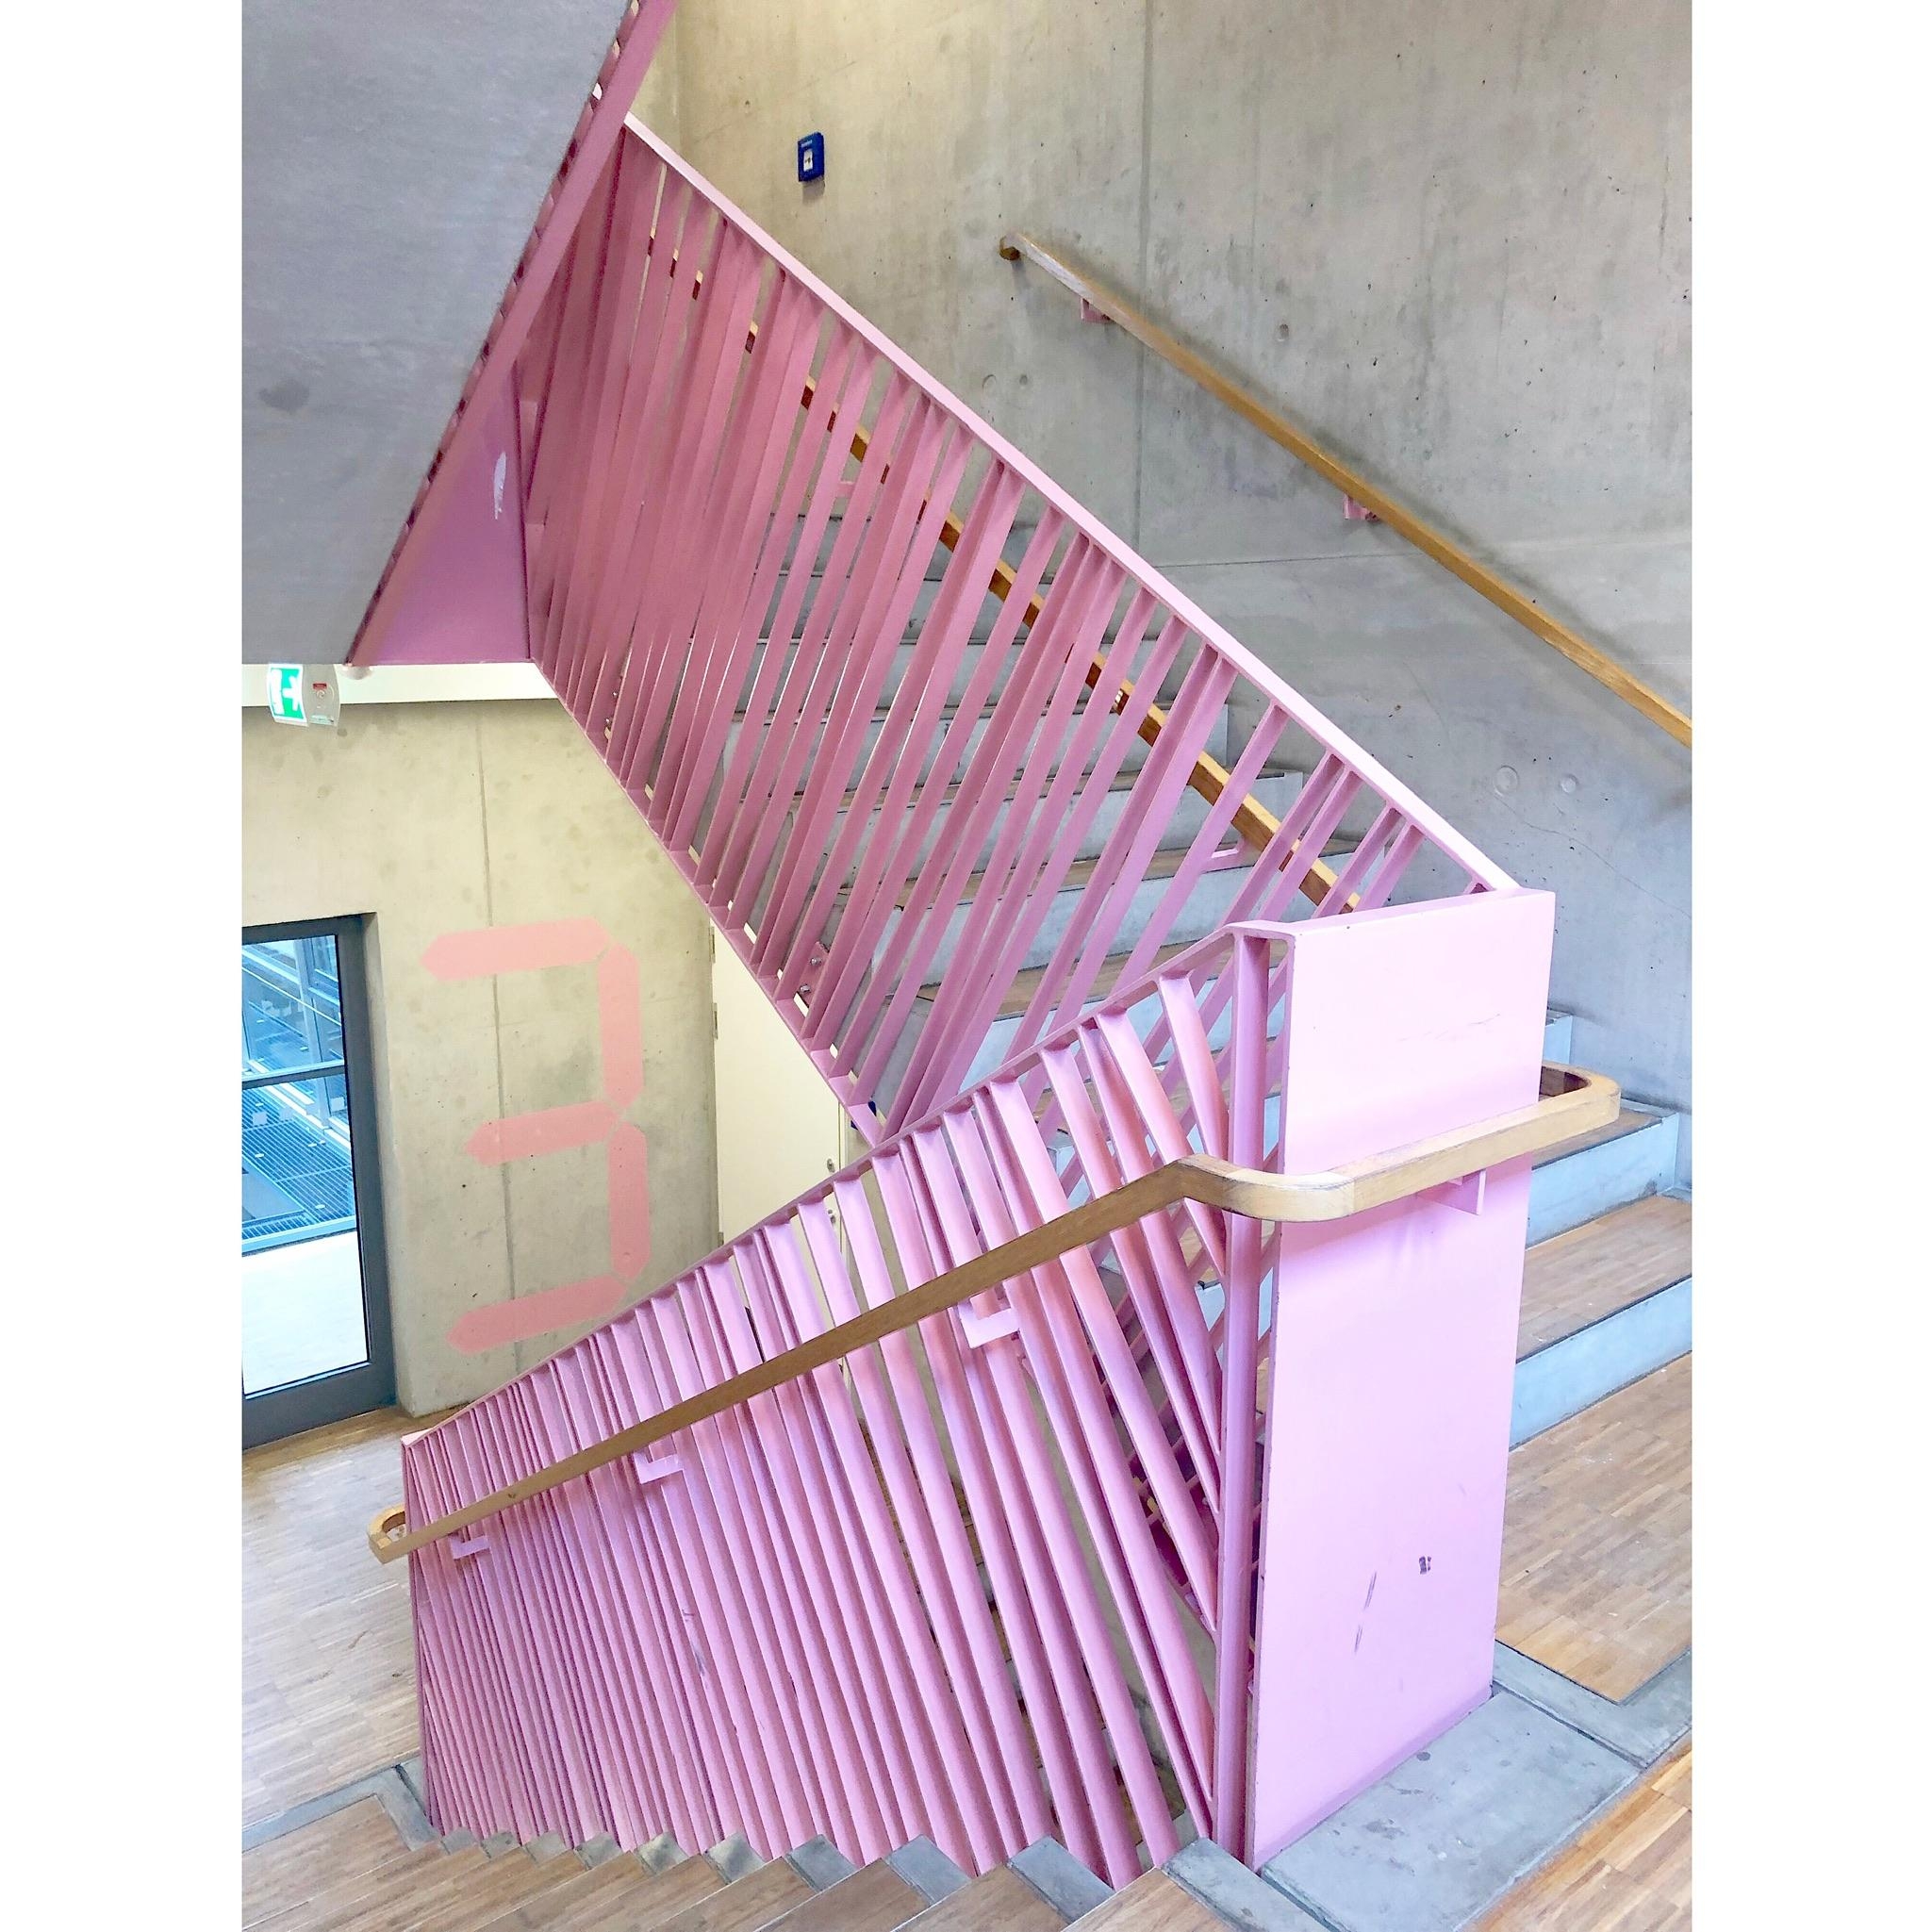 Die coolste Schule, EVER 🖤 🚢⚓️ #mama #industrial #beton #pink #hamburg #hafencity